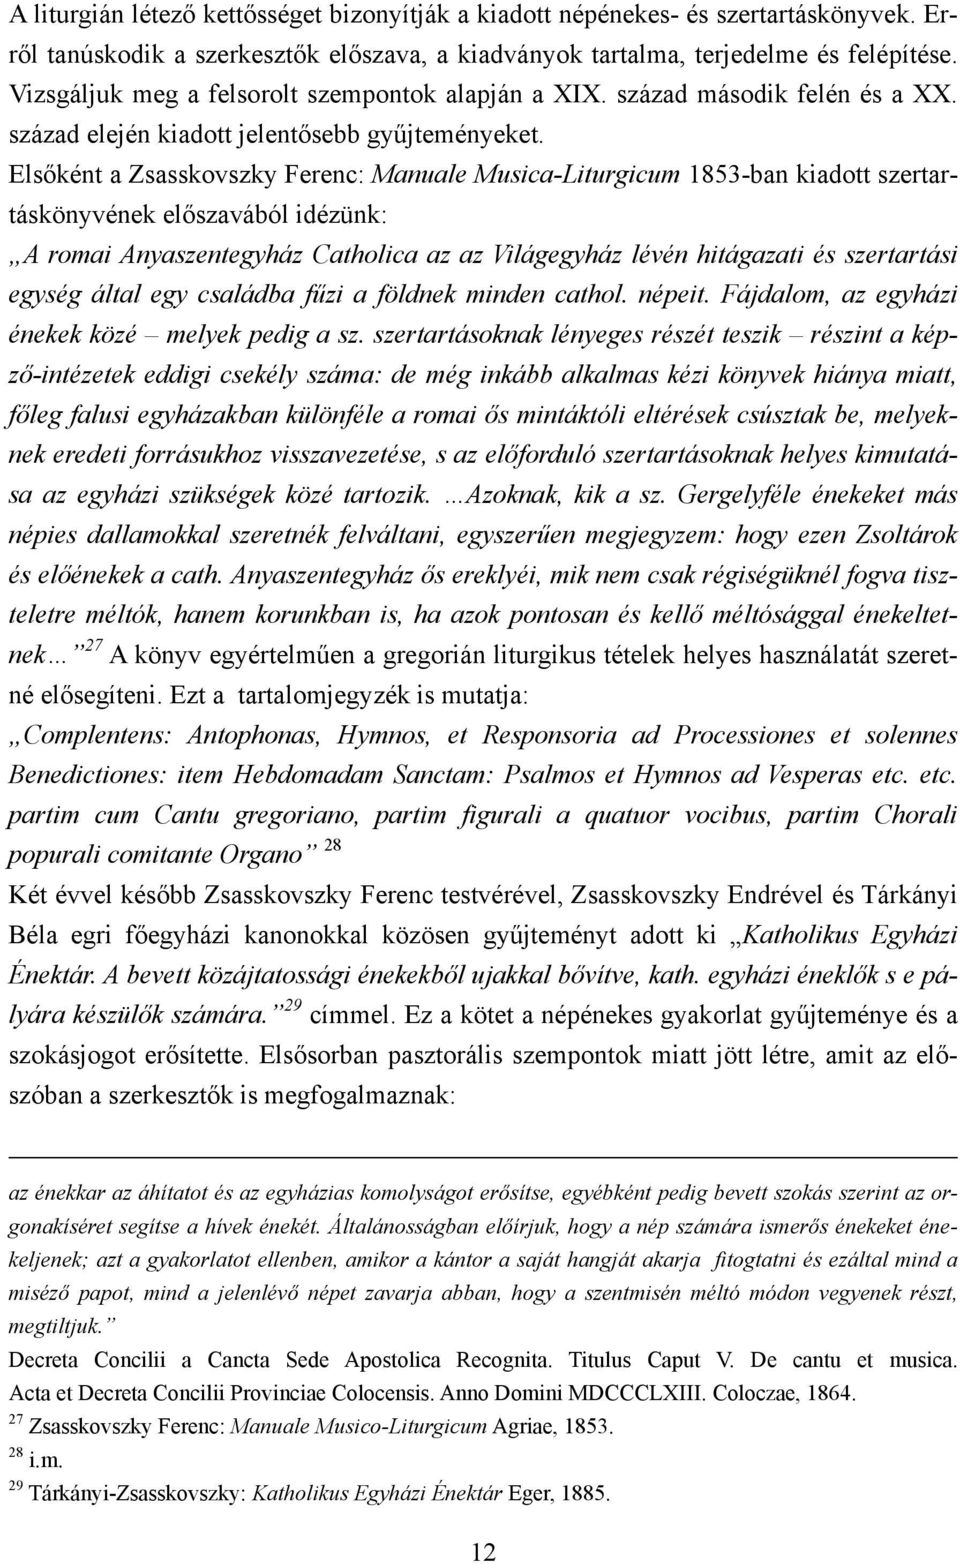 Elsőként a Zsasskovszky Ferenc: Manuale Musica-Liturgicum 1853-ban kiadott szertartáskönyvének előszavából idézünk: A romai Anyaszentegyház Catholica az az Világegyház lévén hitágazati és szertartási